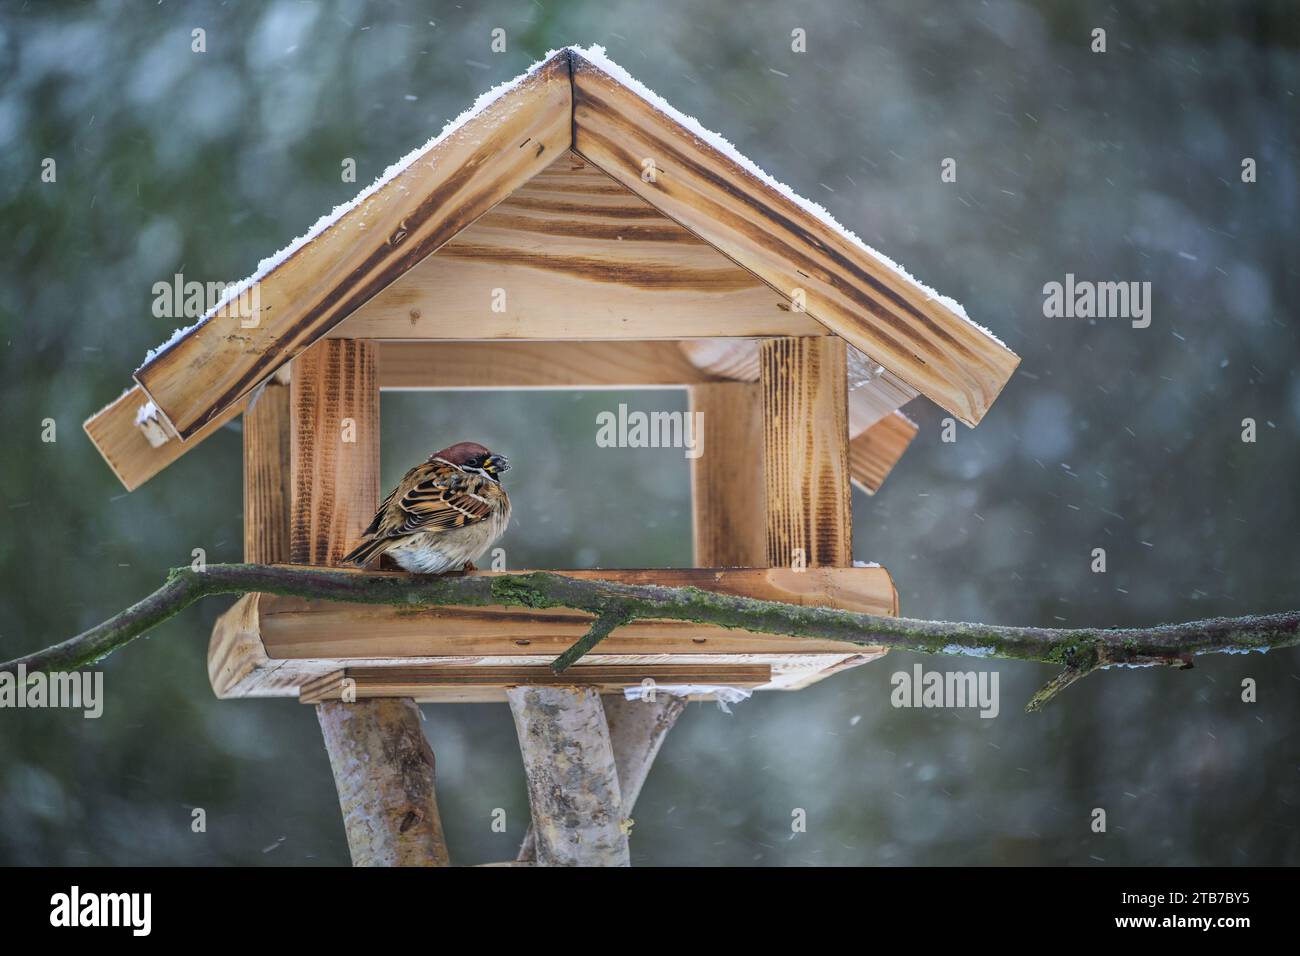 Verfluchter Baumsperling sitzt in einem hölzernen Vogelfutterhaus und isst an einem kalten, schneereichen Wintertag Sonnenblumenkerne, Kopierraum, ausgewählter Fokus, Stockfoto